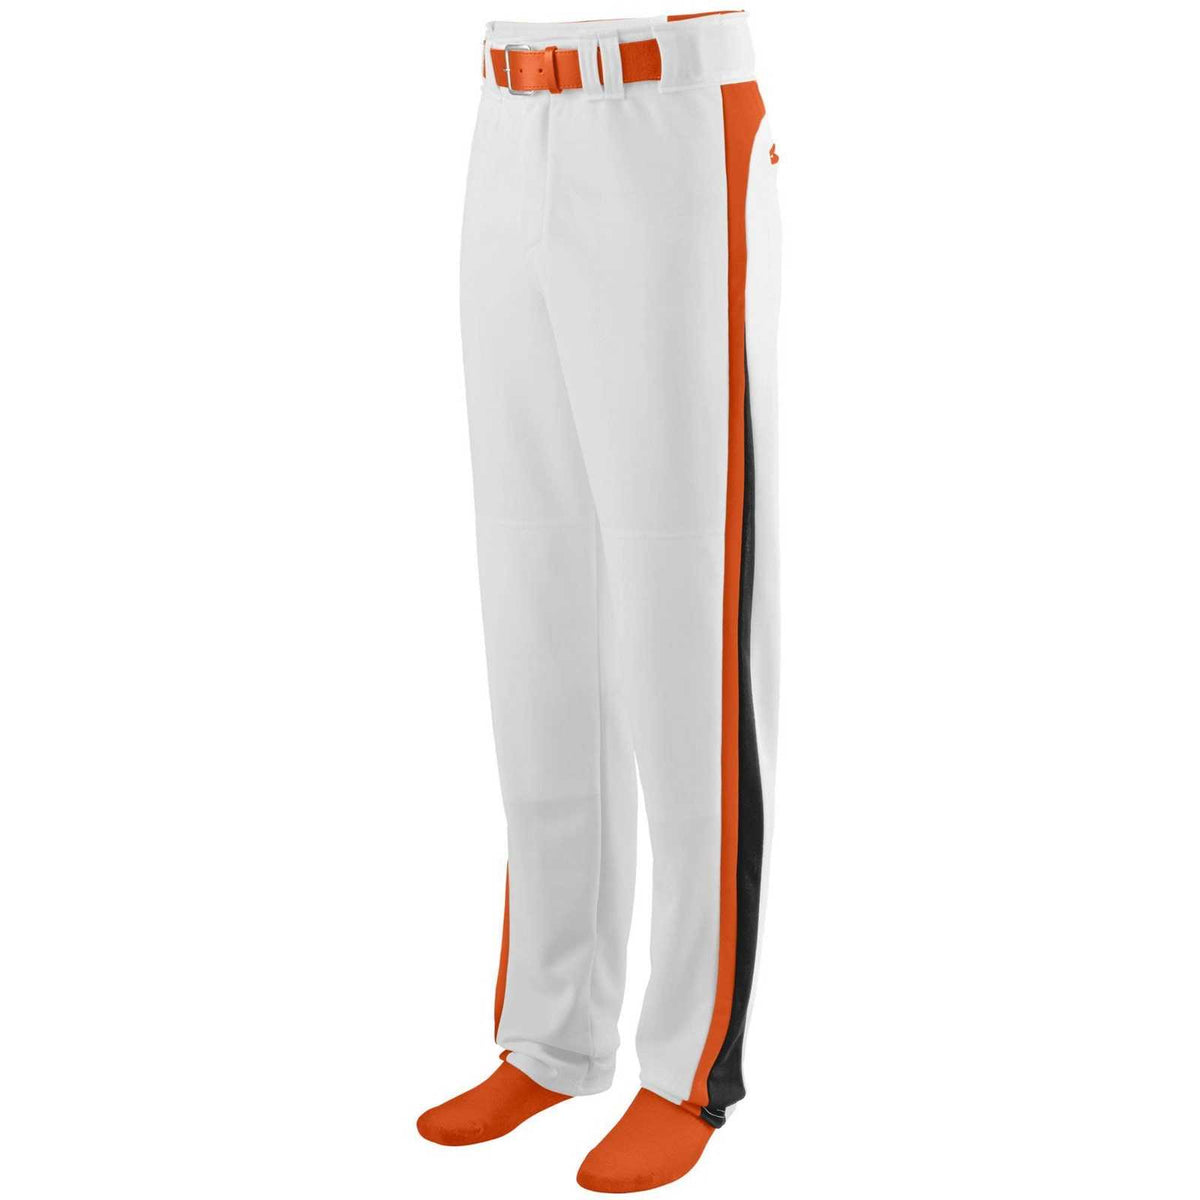 Augusta 1477 Slider Baseball Softball Pant - White Orange Black - HIT a Double